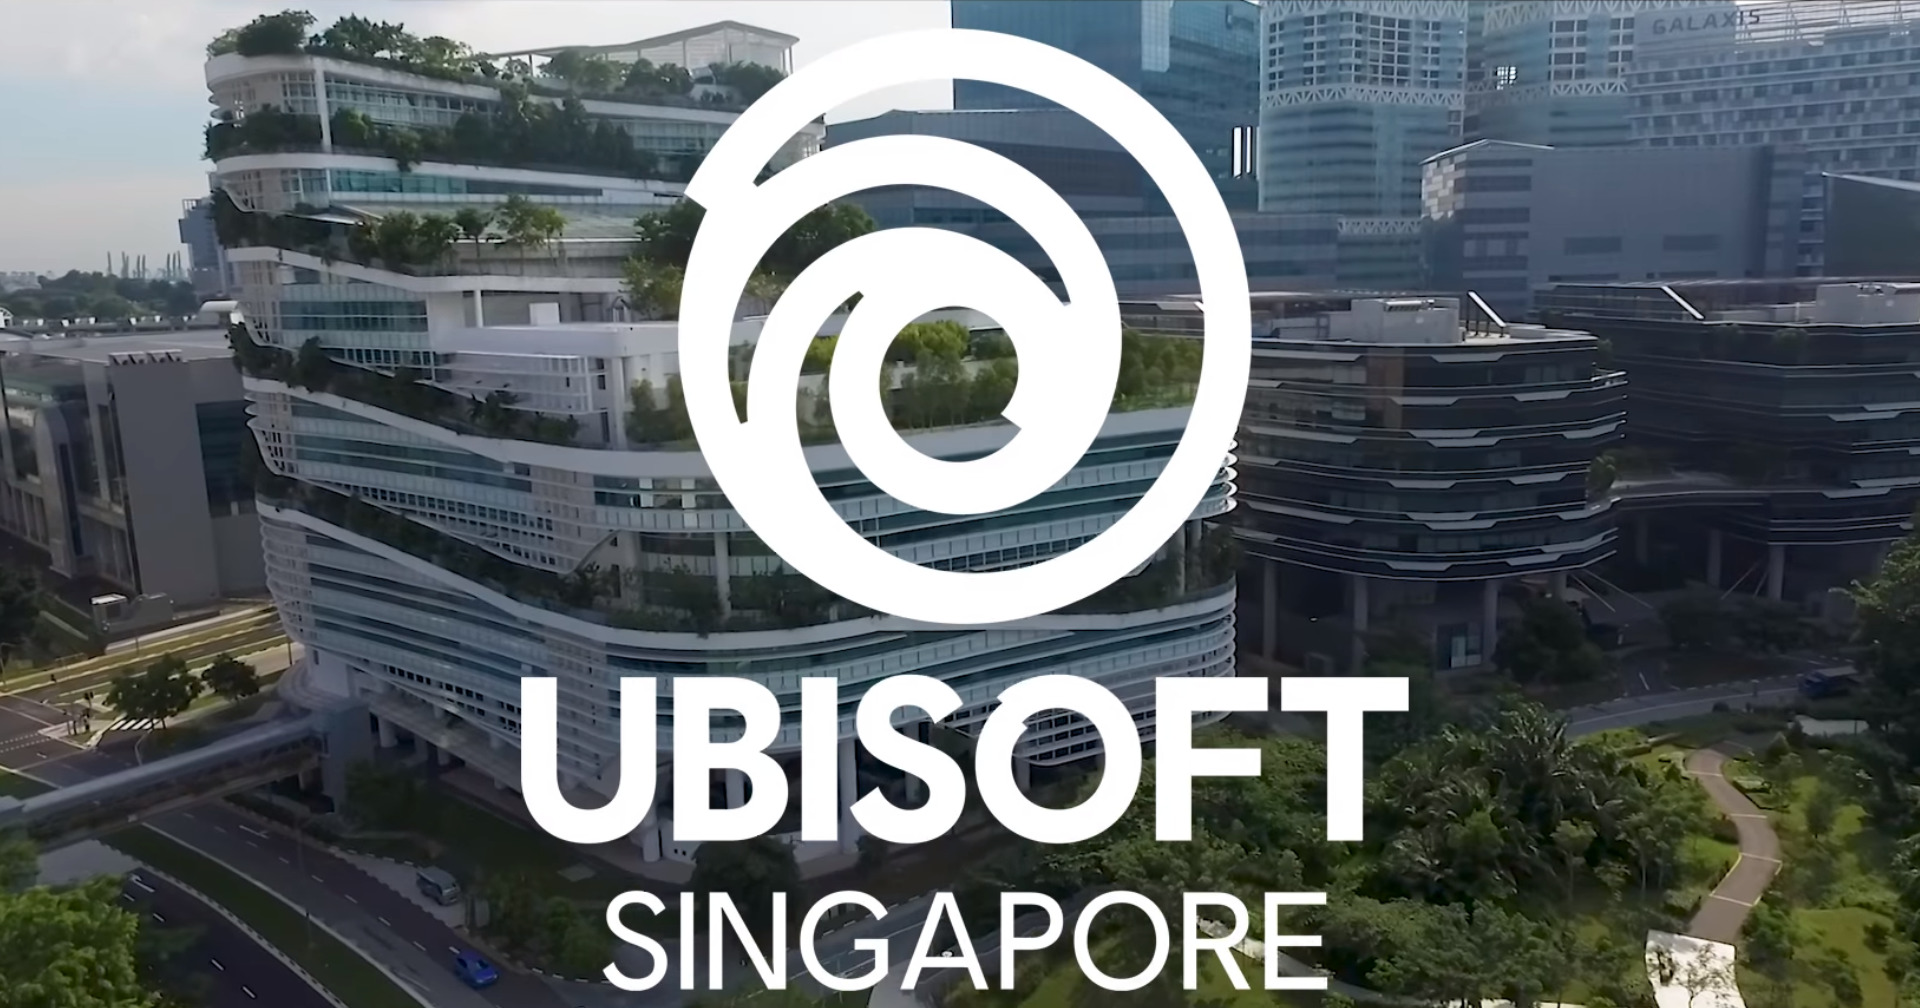 สิงคโปร์ตรวจสอบ Ubisoft Singapore  ในข้อกล่าวหาการเลือกปฏิบัติและการล่วงละเมิดทางเพศ | #beartai